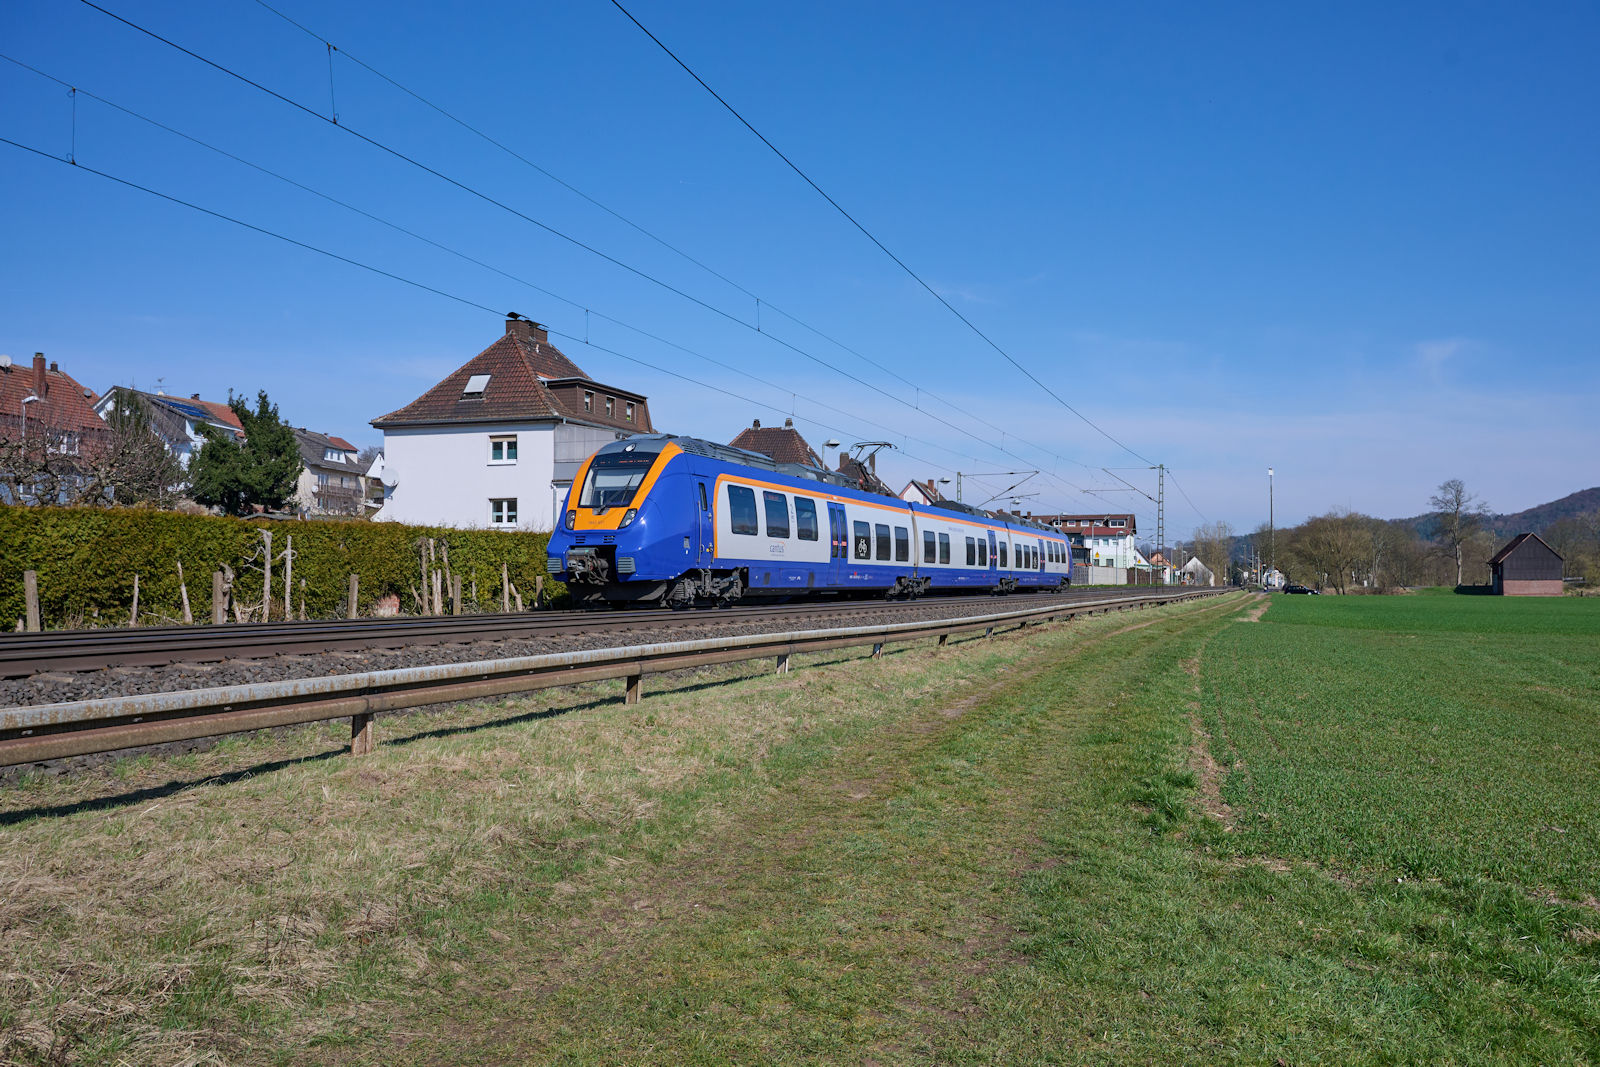 2020 bernahm die Cantus Verkehrsgesellschaft zwei Talent 2 der SWEG und setzt diese unter anderem auf dem RE5 ein. Am 09.03.2024 war 1 442 651 als RE 24273 auf dem Weg von Kassel Hauptbahnhof nach Bad Hersfeld und hat gerade den Haltepunkt Ludwigsau-Friedlos durchfahren.